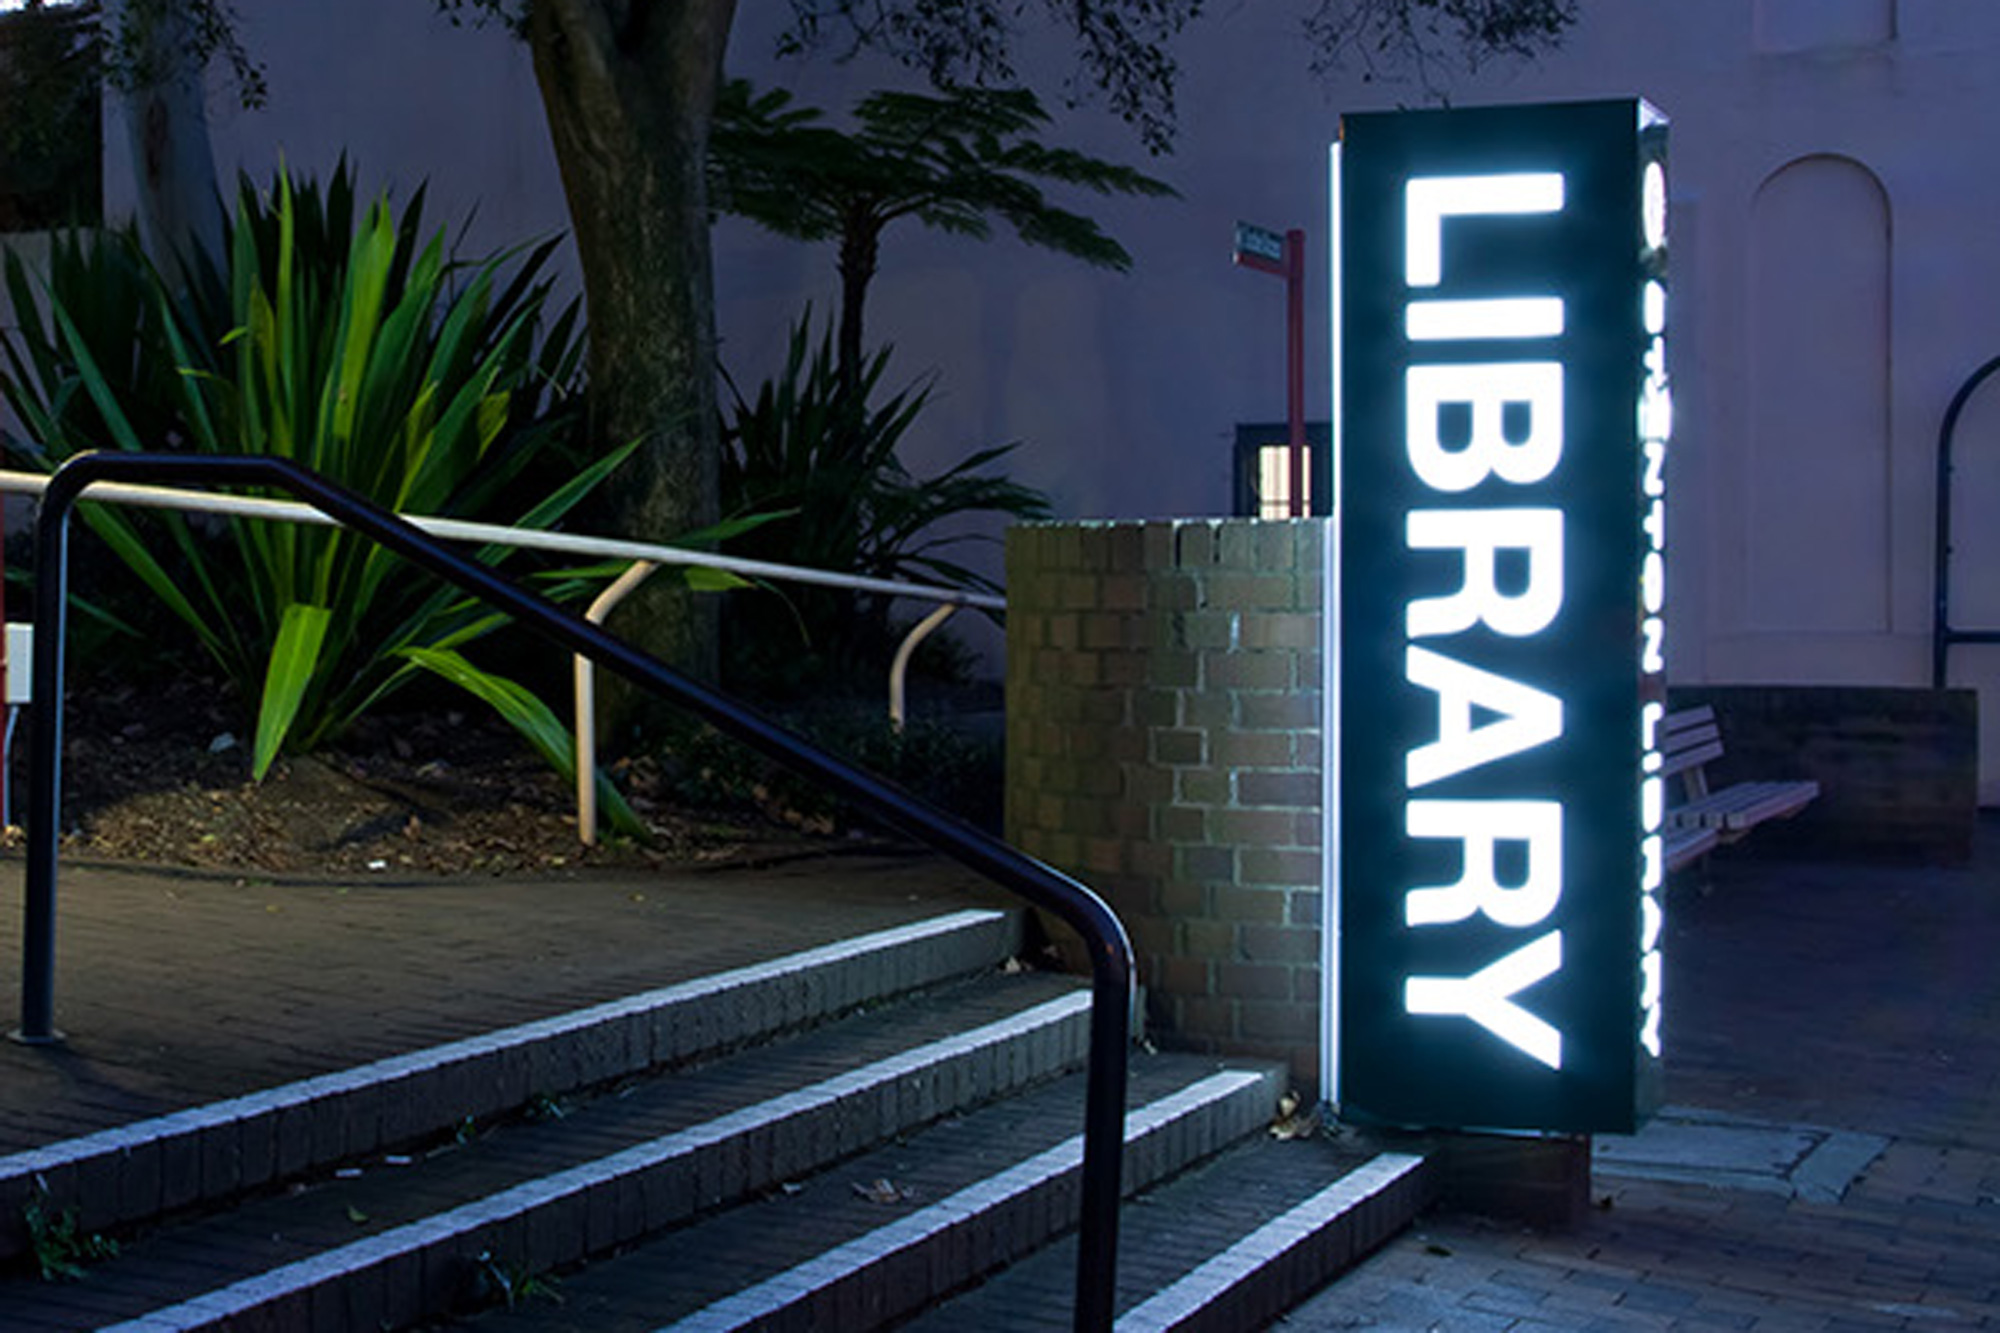 Stanton Library - Illuminated Sign